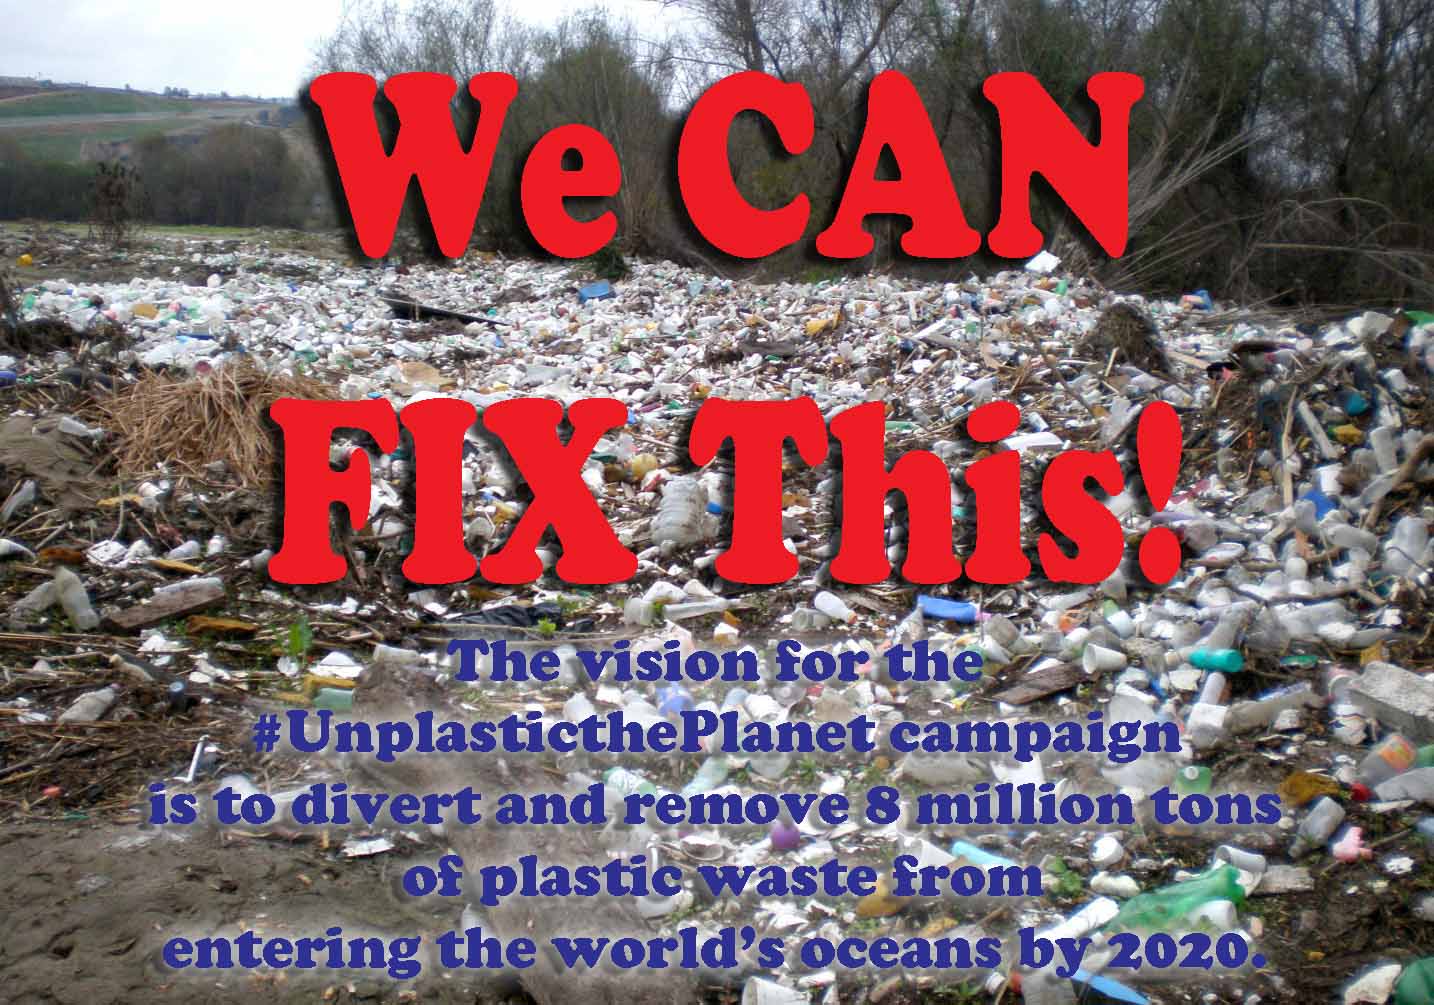 Take the Pledge to #UnplasticthePlanet